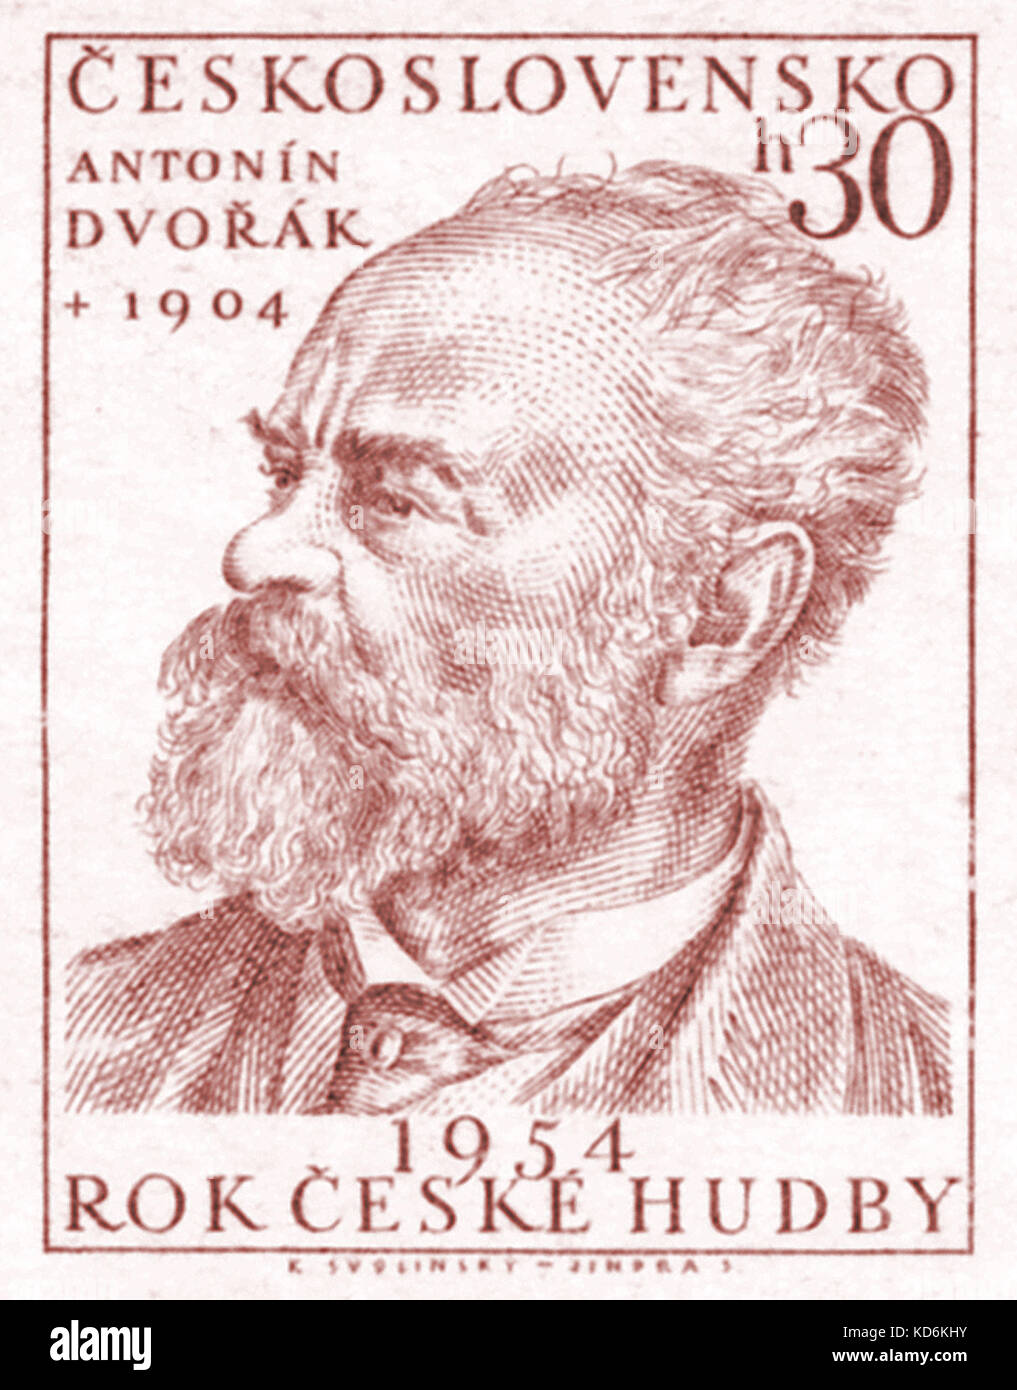 Portrait de Antonin Dvorak sur timbre tchèque célébrer 50e anniversaire de la mort de Dvorak, compositeur tchèque 8 septembre 1841- 1 er mai 1904 Banque D'Images